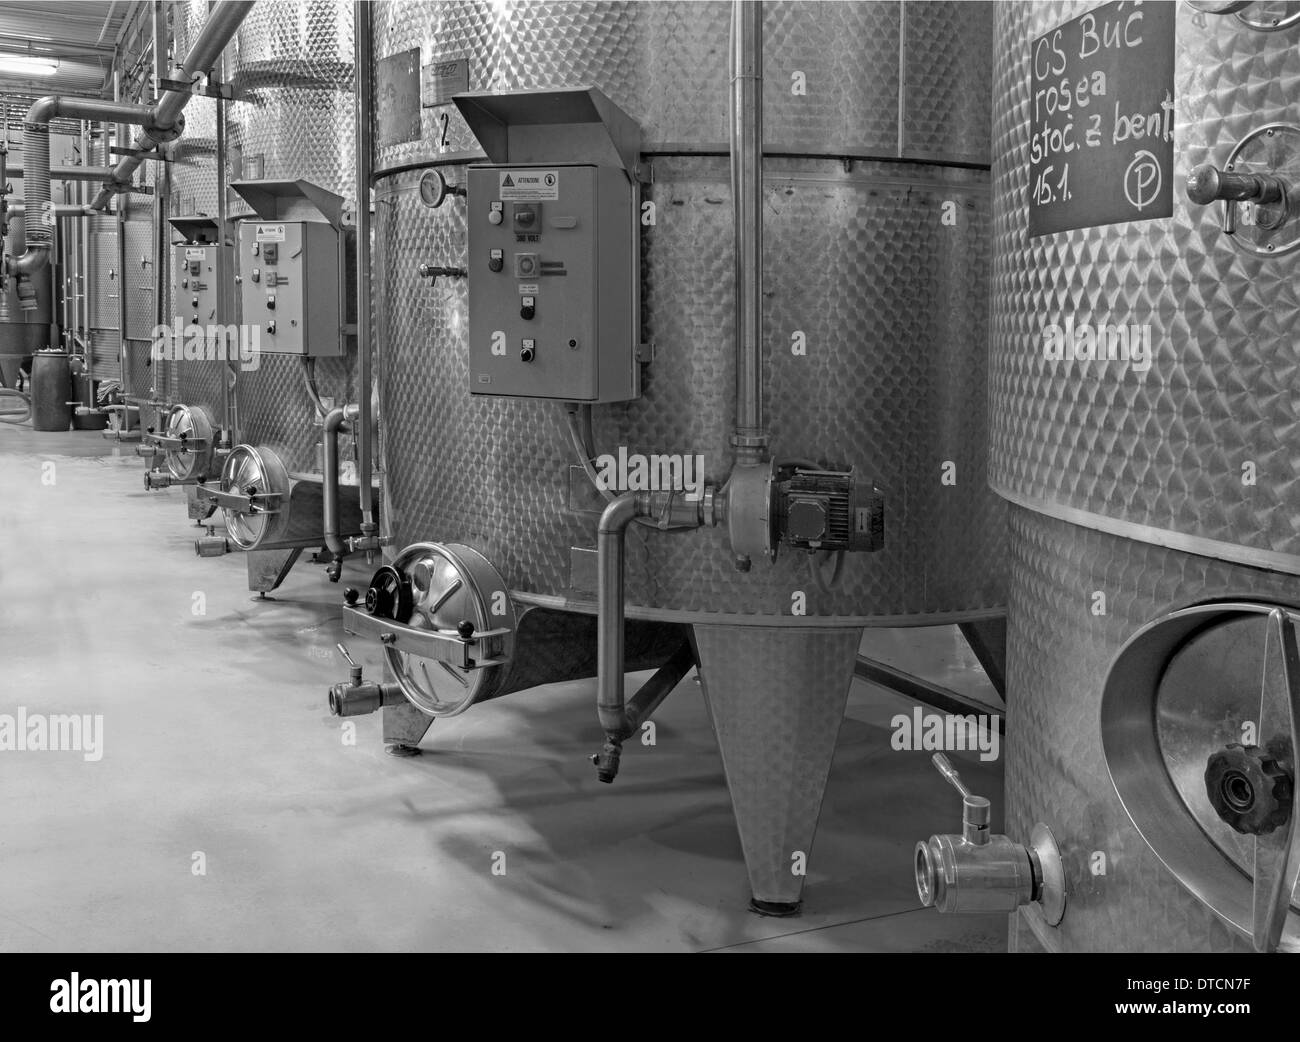 BRATISLAVA, Slowakei - 30. Januar 2014: Indoor von Wein Manu... große slowakischen Hersteller. Moderne große Fass für die Gärung. Stockfoto